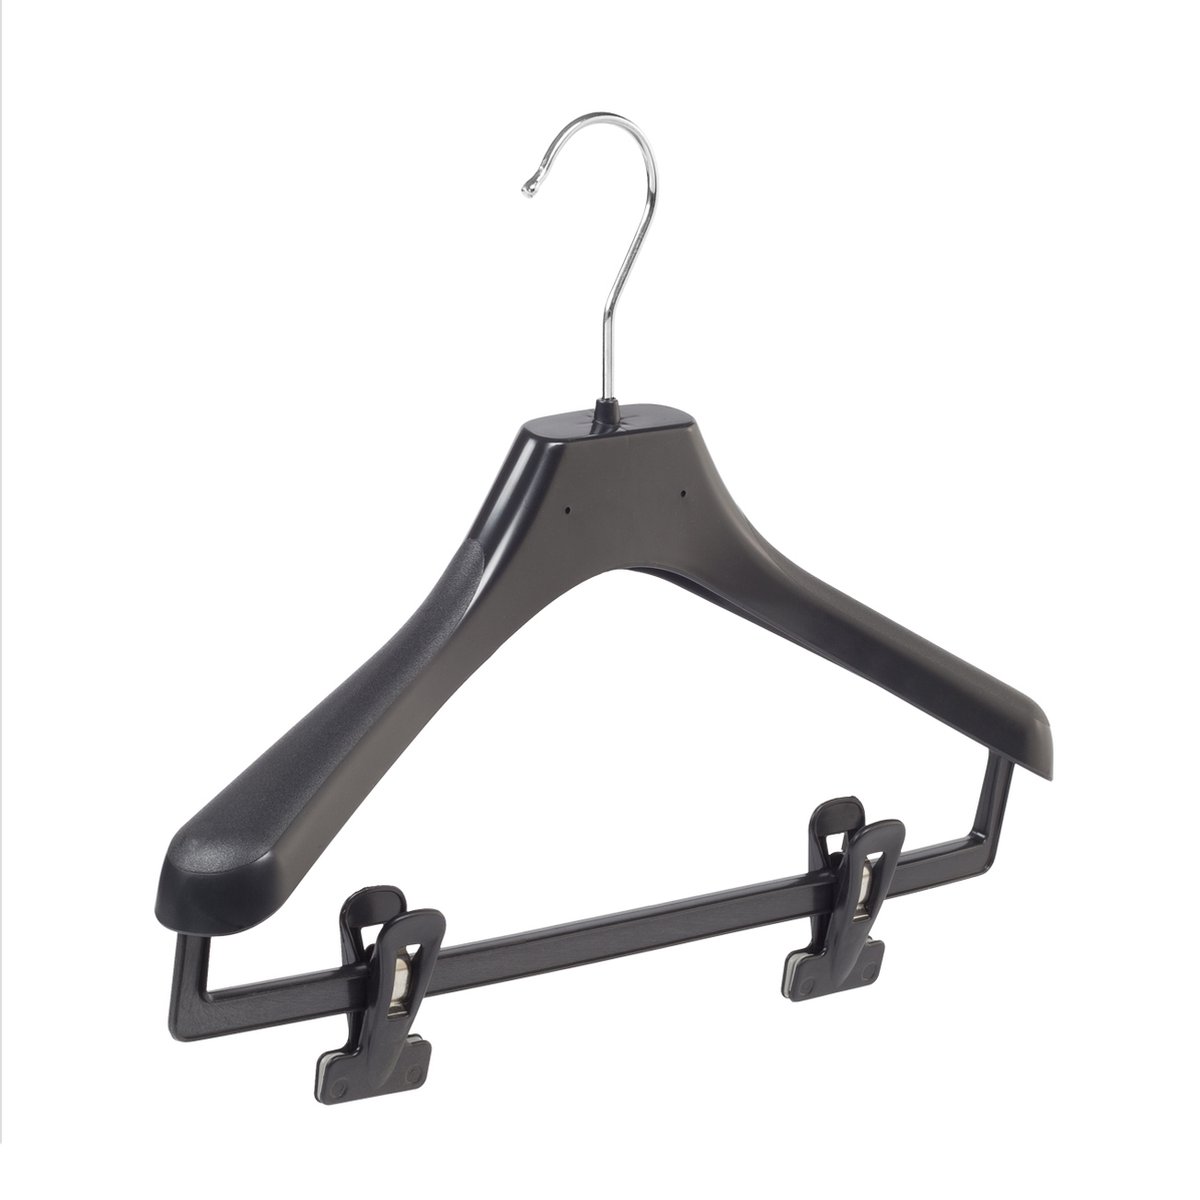 De Kledinghanger Gigant - 10 x Mantelhanger / kostuumhanger / kinderhanger kunststof zwart met schouderverbreding en anti-slip knijpers, 36 cm